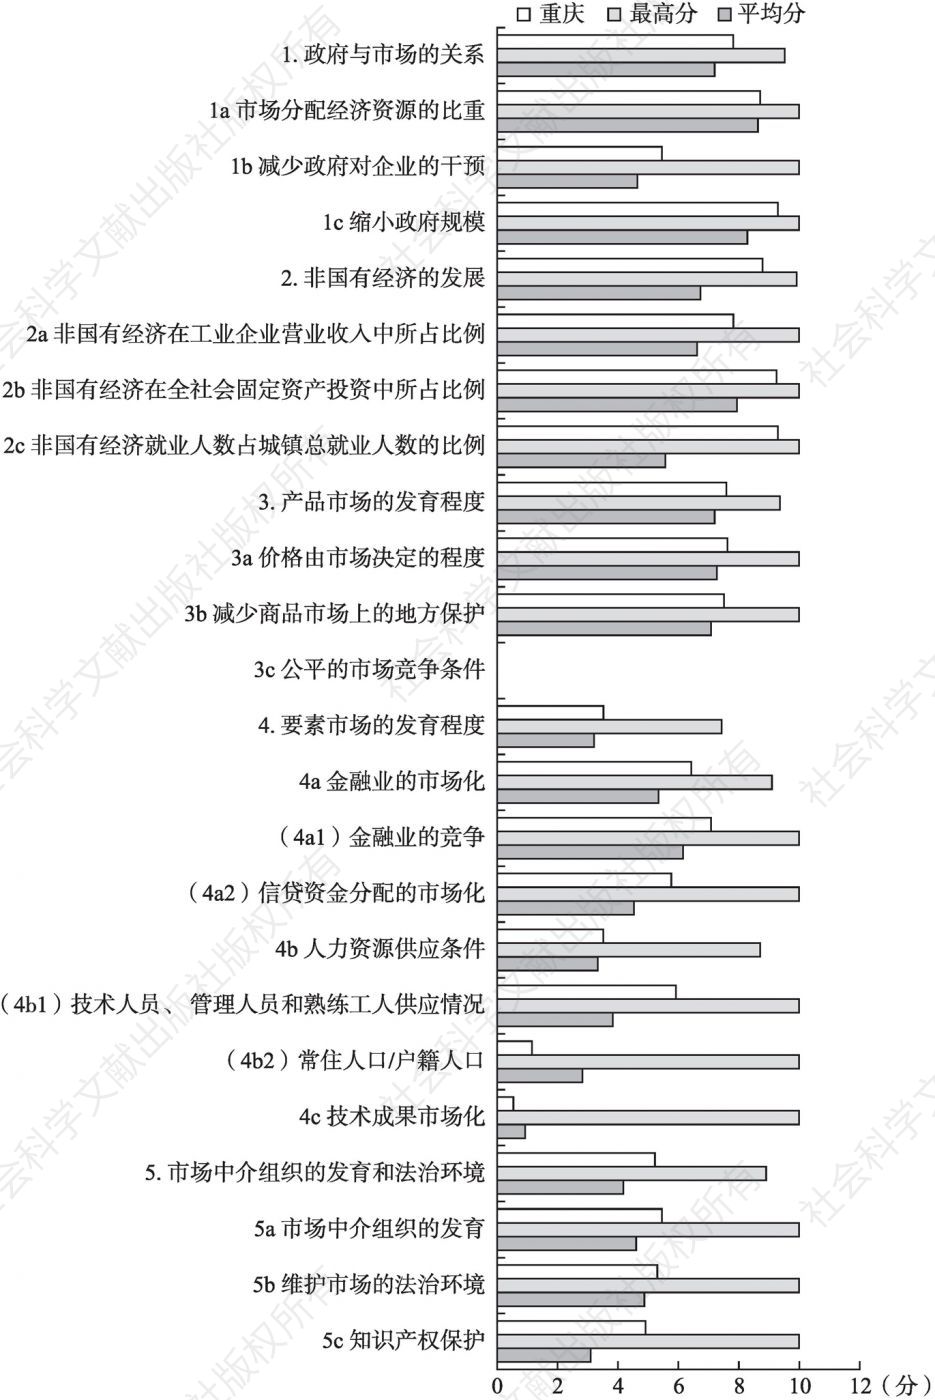 2016年重庆市场化各方面指数和分项指数与全国最高分及平均分的比较